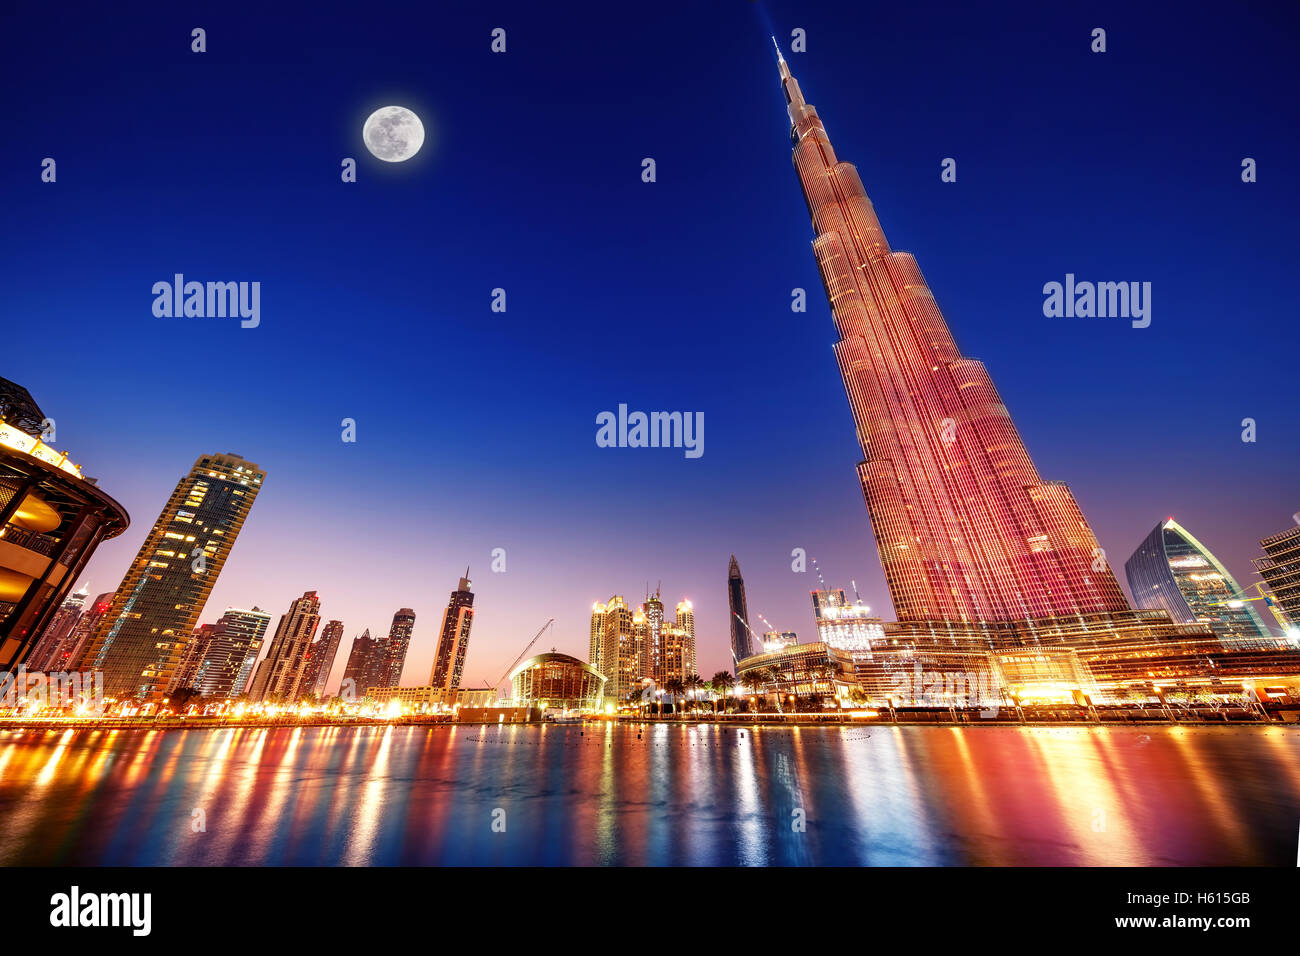 DUBAI, Emirati Arabi Uniti - 17 febbraio: Burj Khalifa e fontana - più alte del mondo torre a 828m di notte con la luce della luna Foto Stock